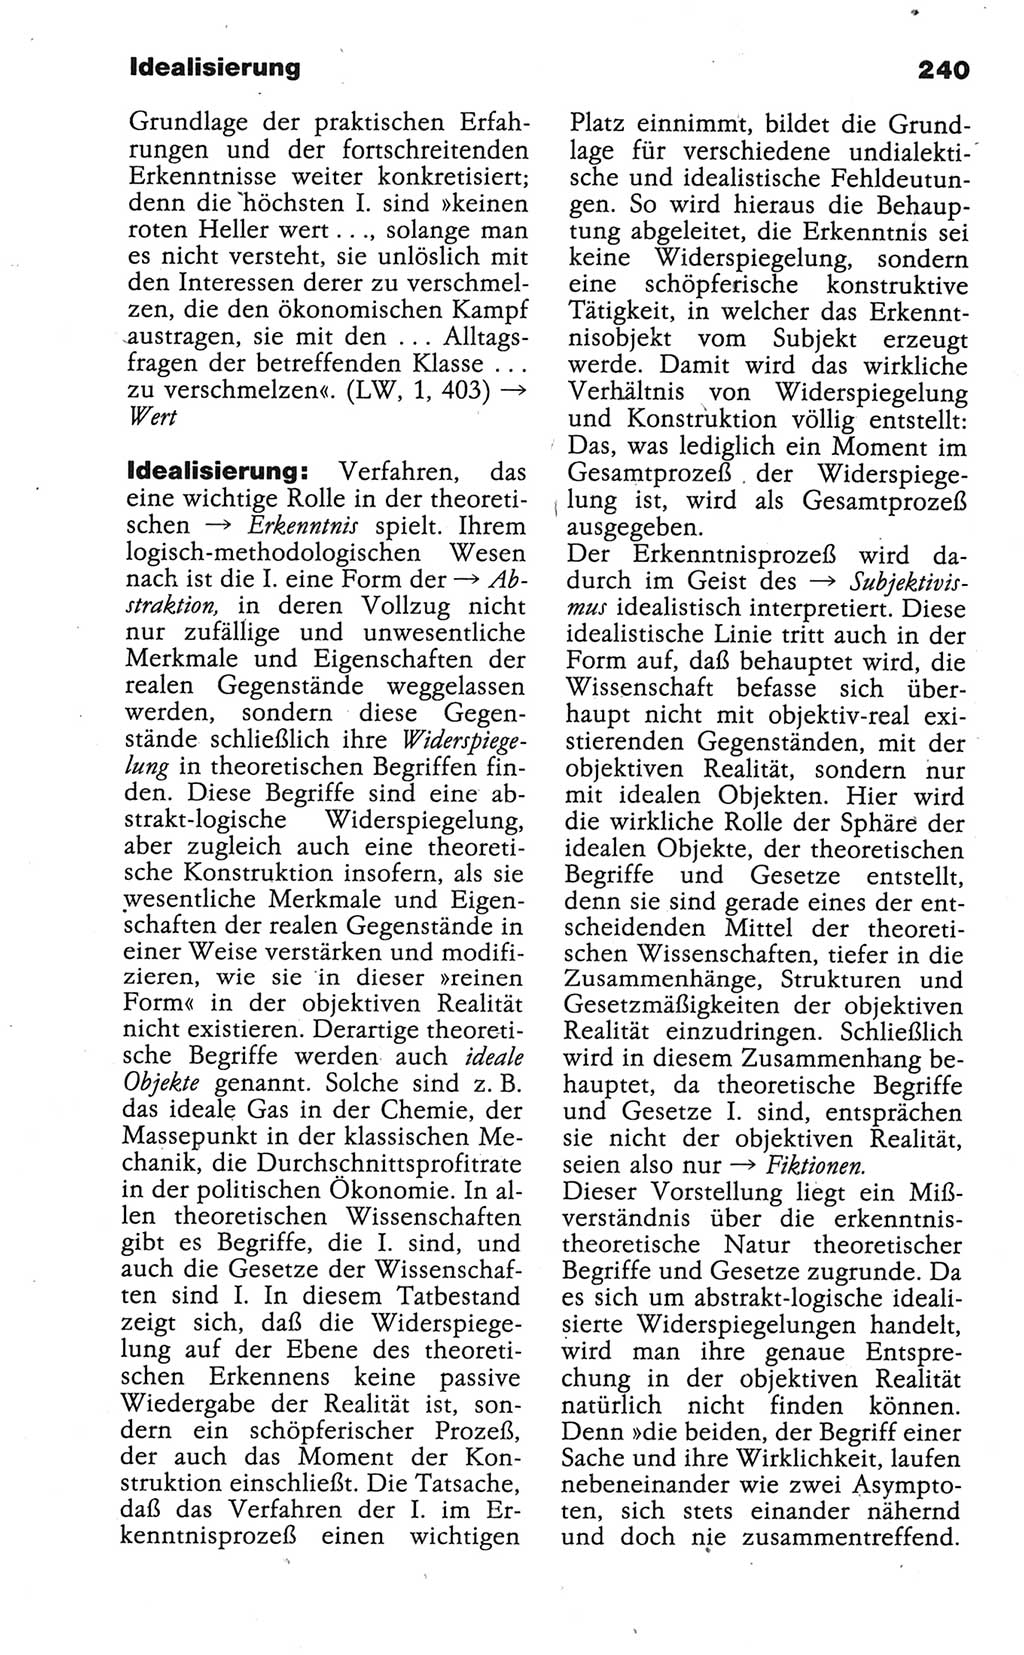 Wörterbuch der marxistisch-leninistischen Philosophie [Deutsche Demokratische Republik (DDR)] 1986, Seite 240 (Wb. ML Phil. DDR 1986, S. 240)